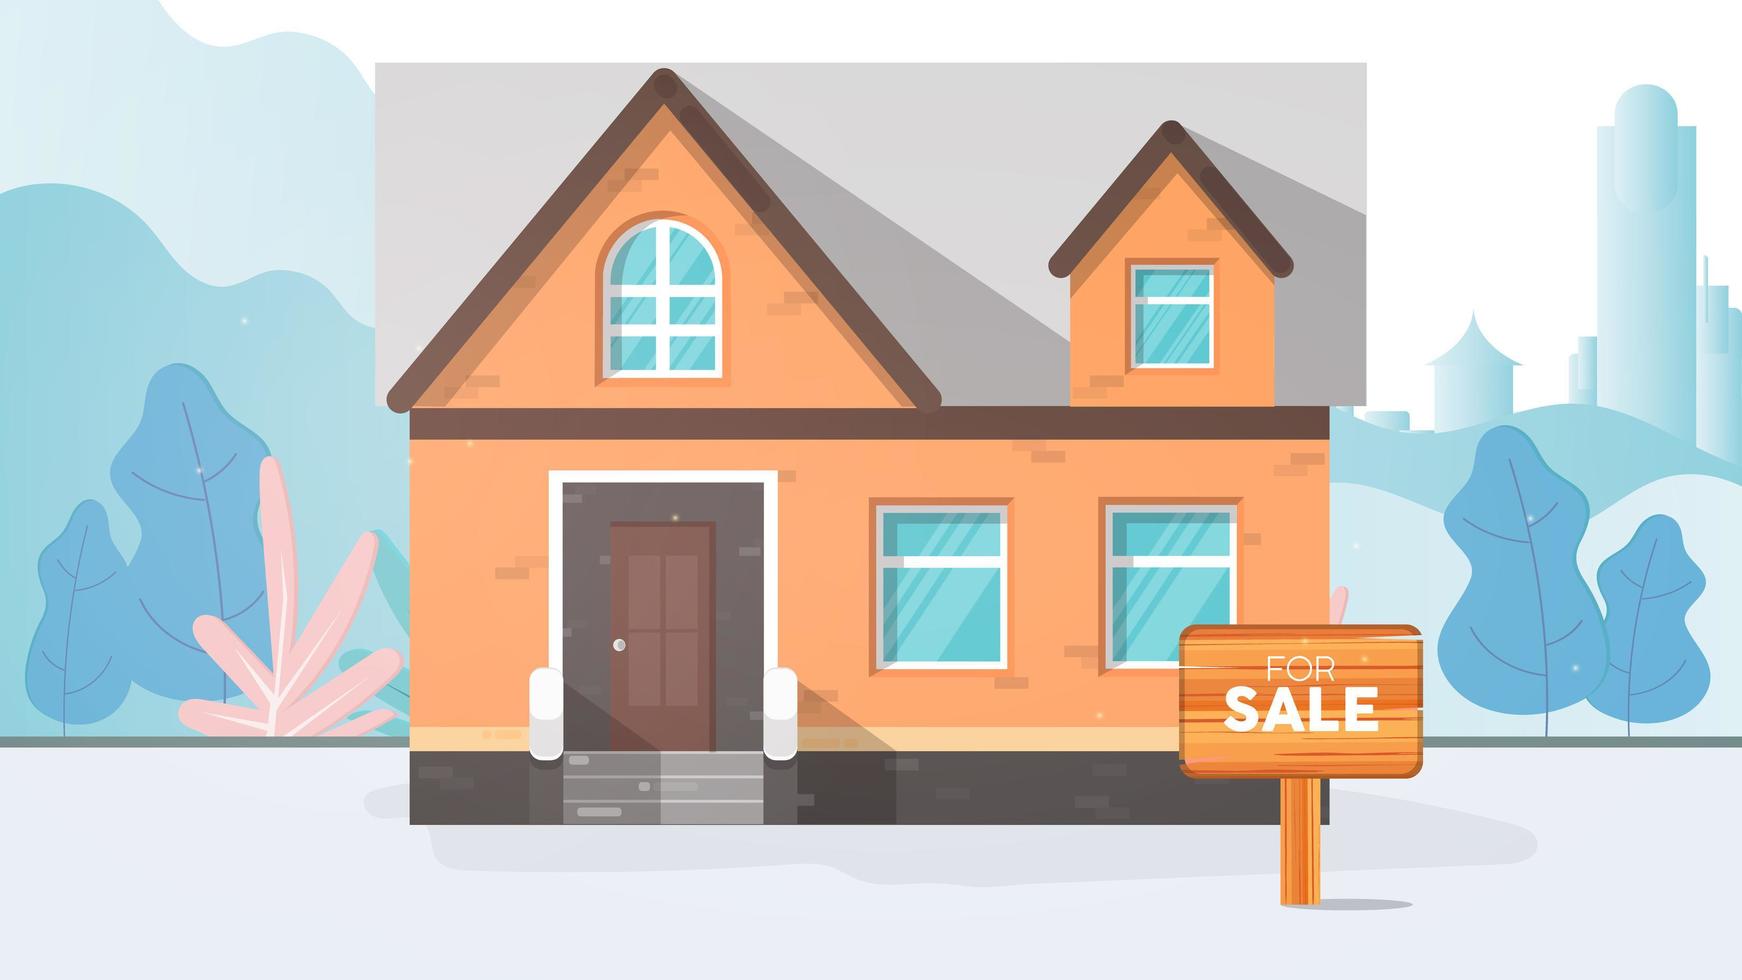 Haus zu verkaufen. zu verkaufen Zeichen. Haus- und Immobilienverkaufskonzept. vektor